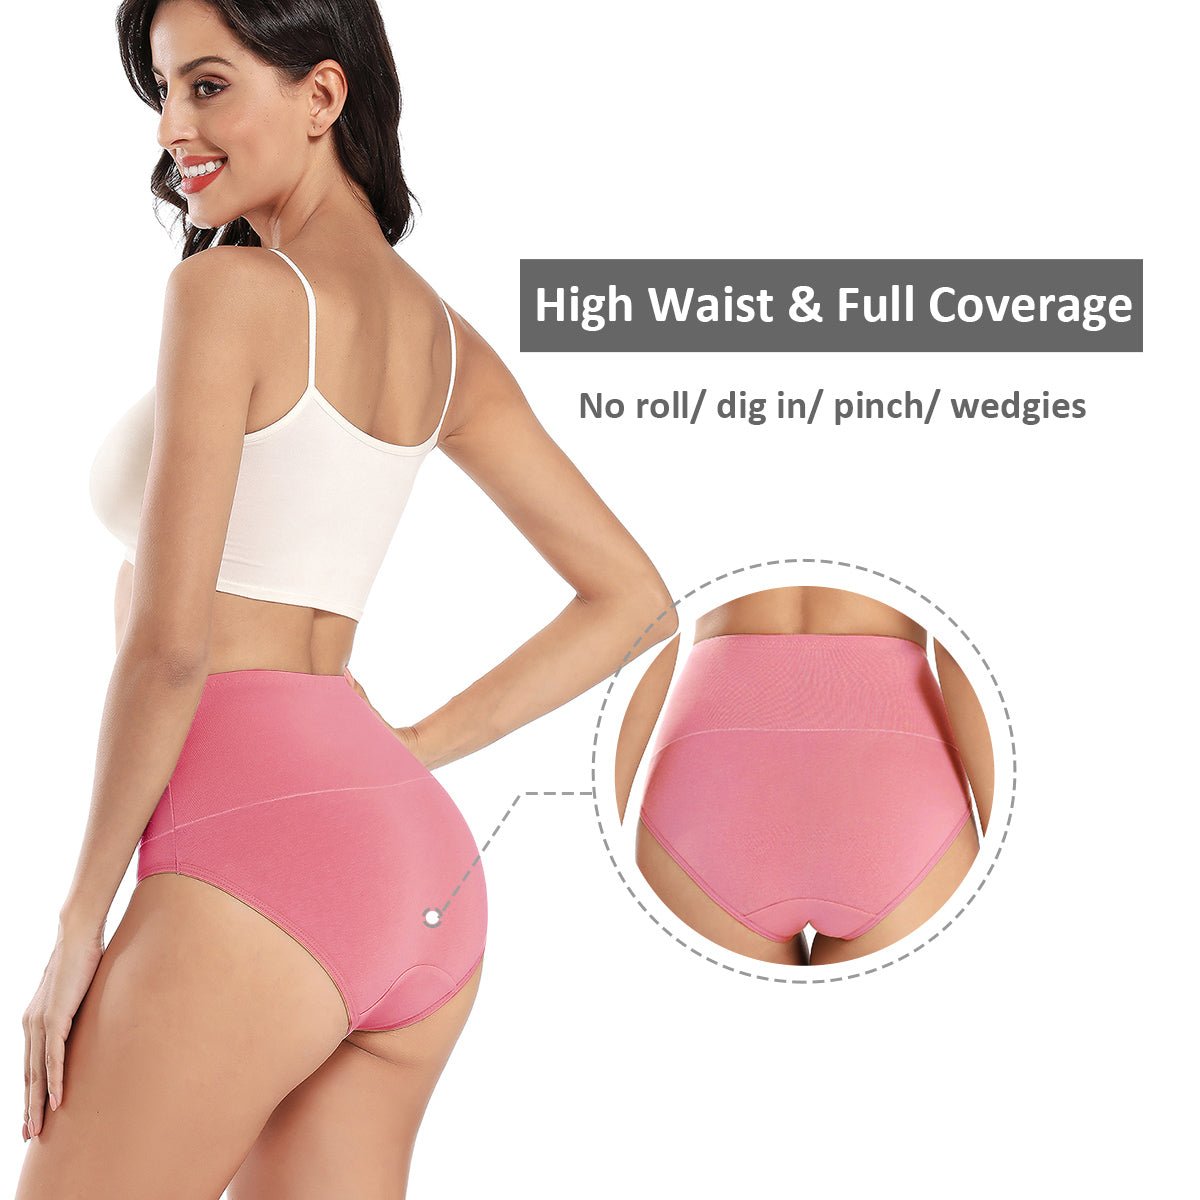 Wirarpa High Waist Underwear are on sale at